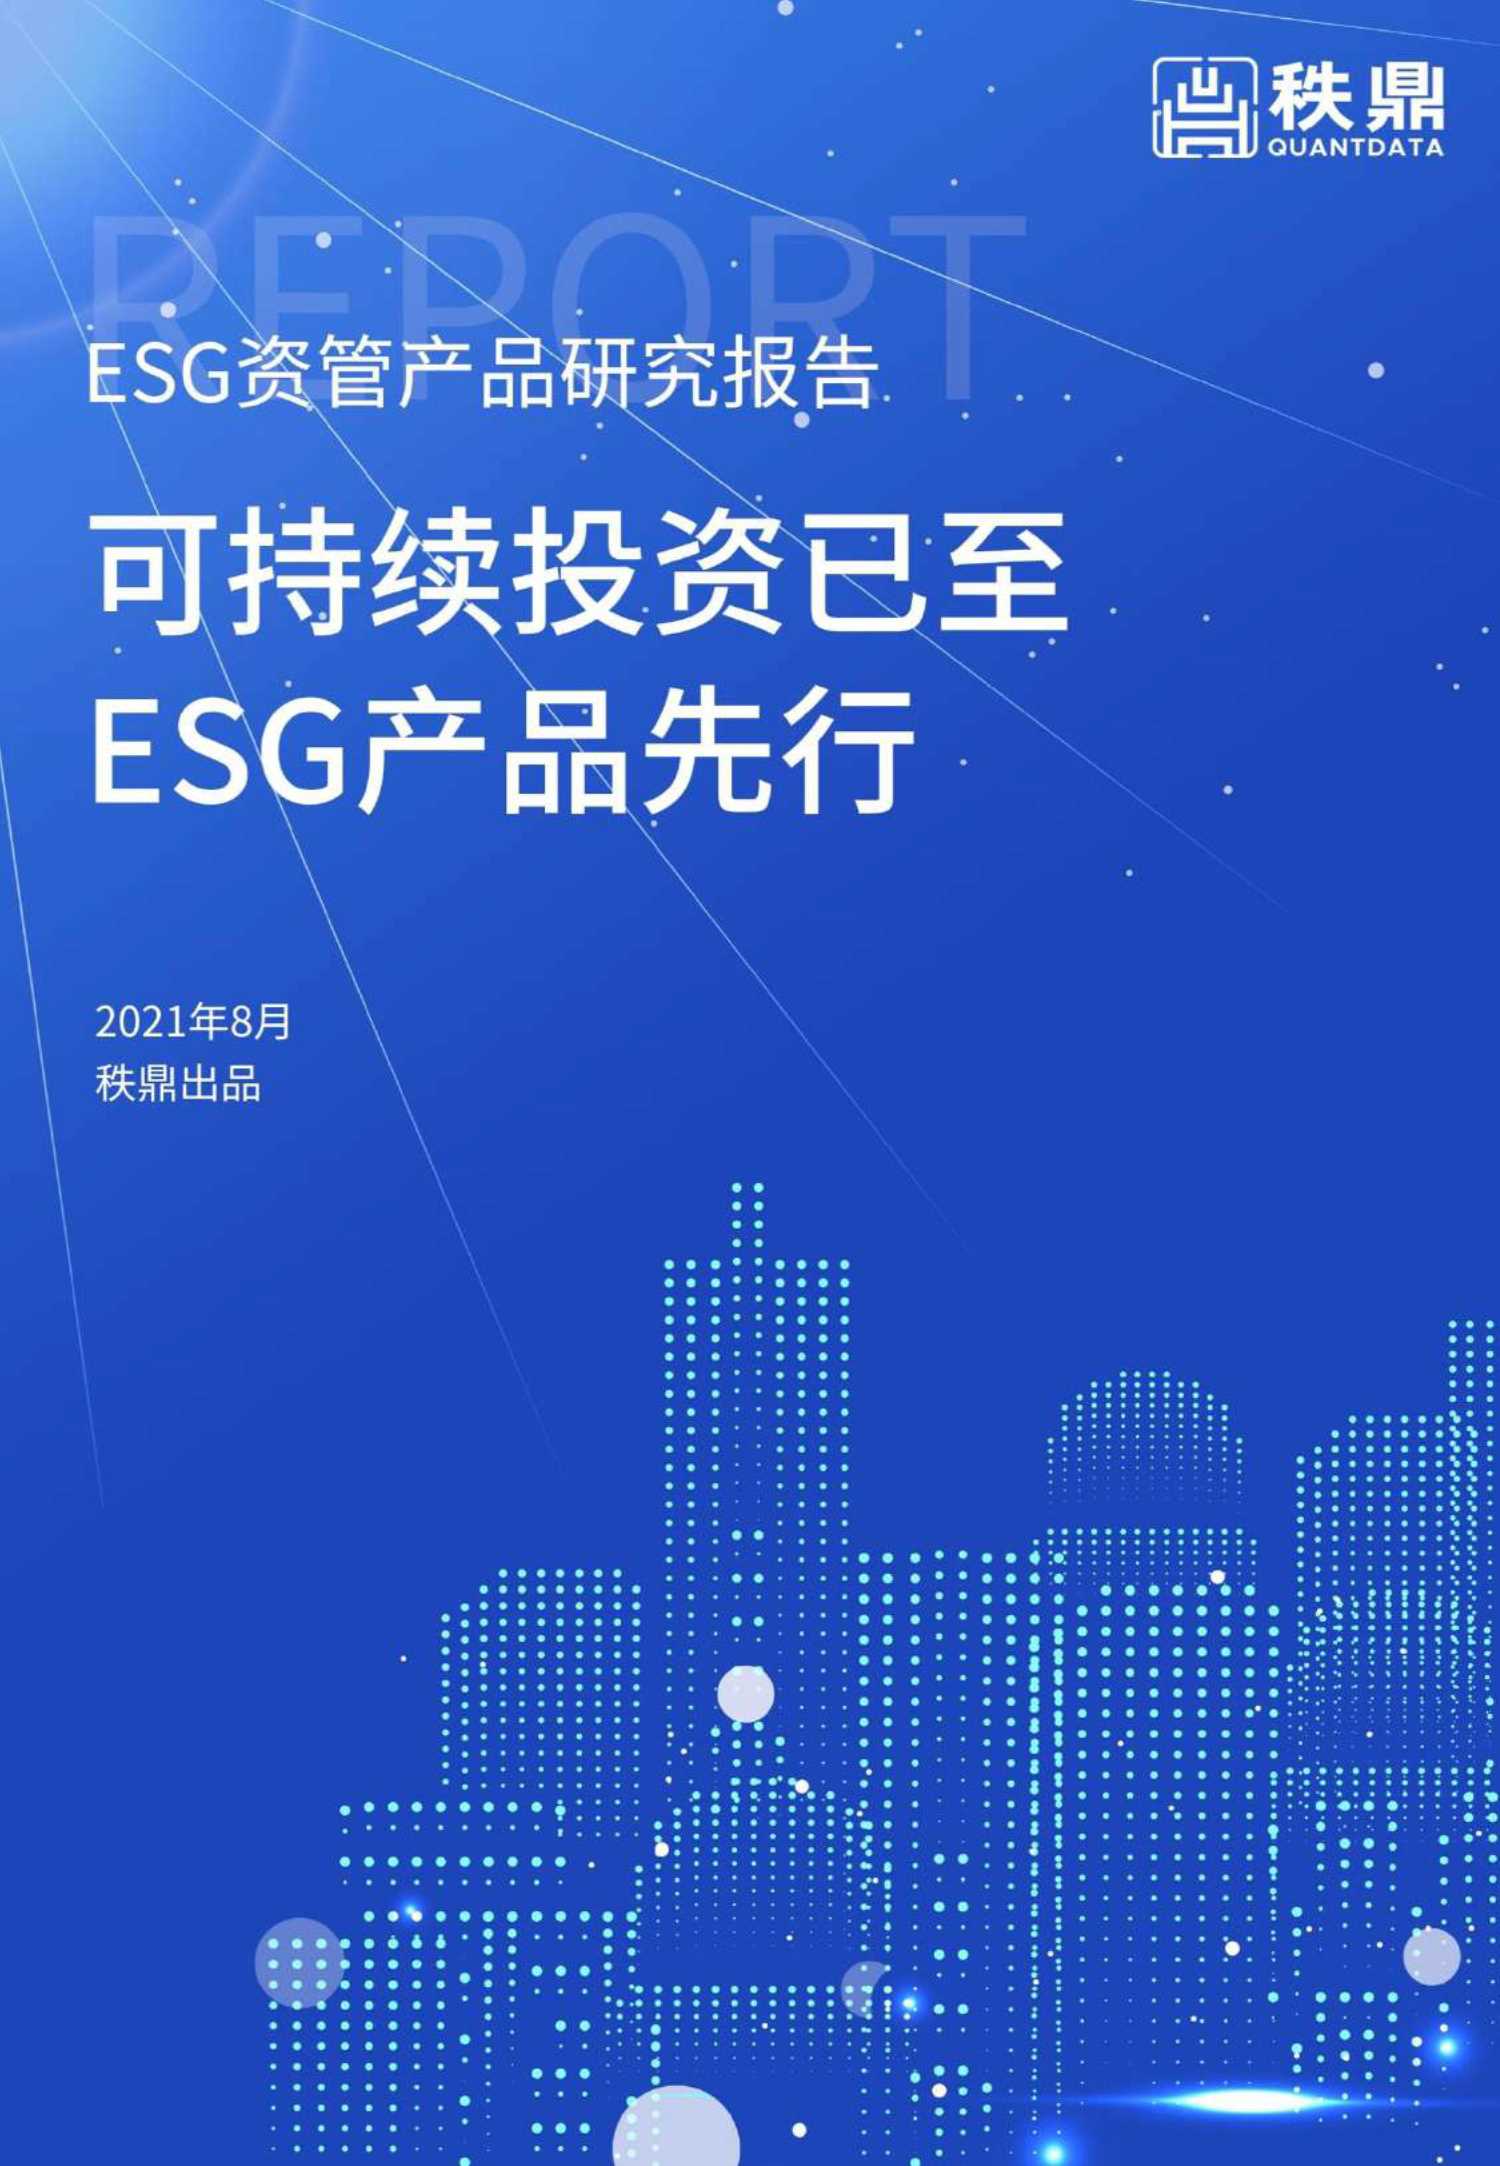 2021年8月ESG资管产品研究报告-2021.10-31页